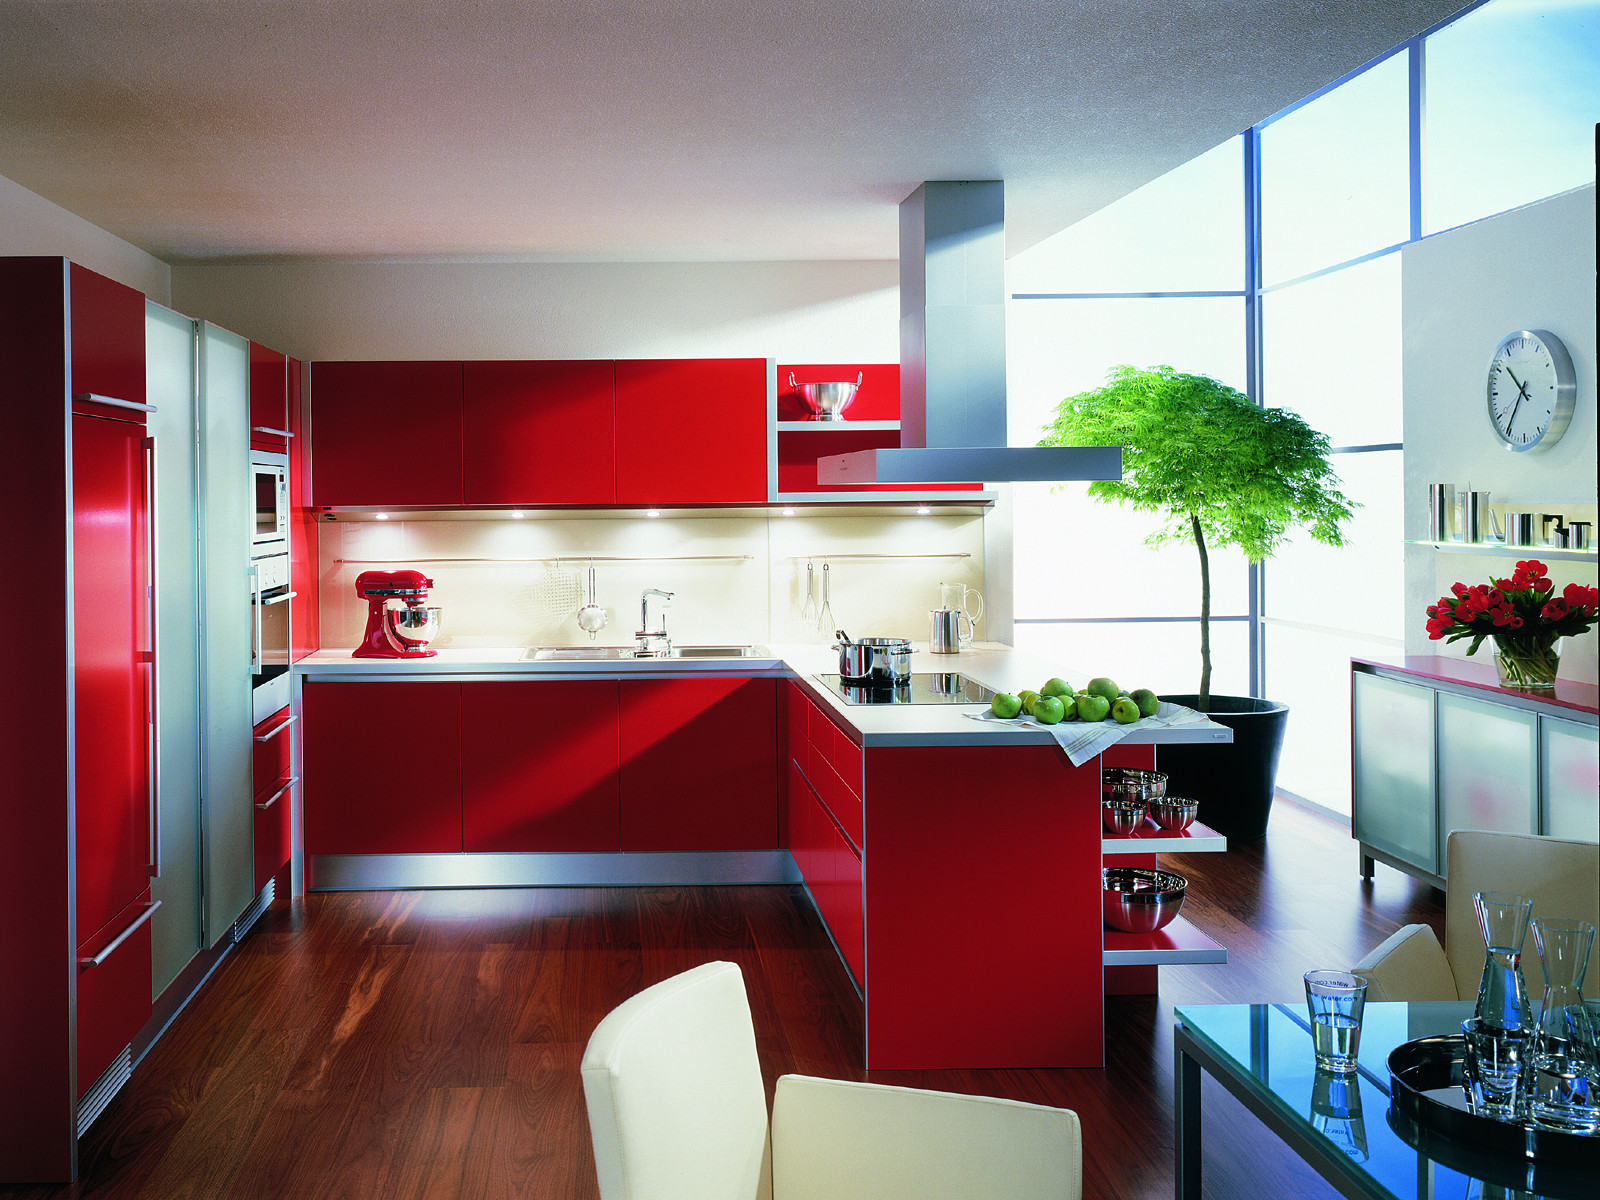 Красный кухонный гарнитур оживляет пространство кухни